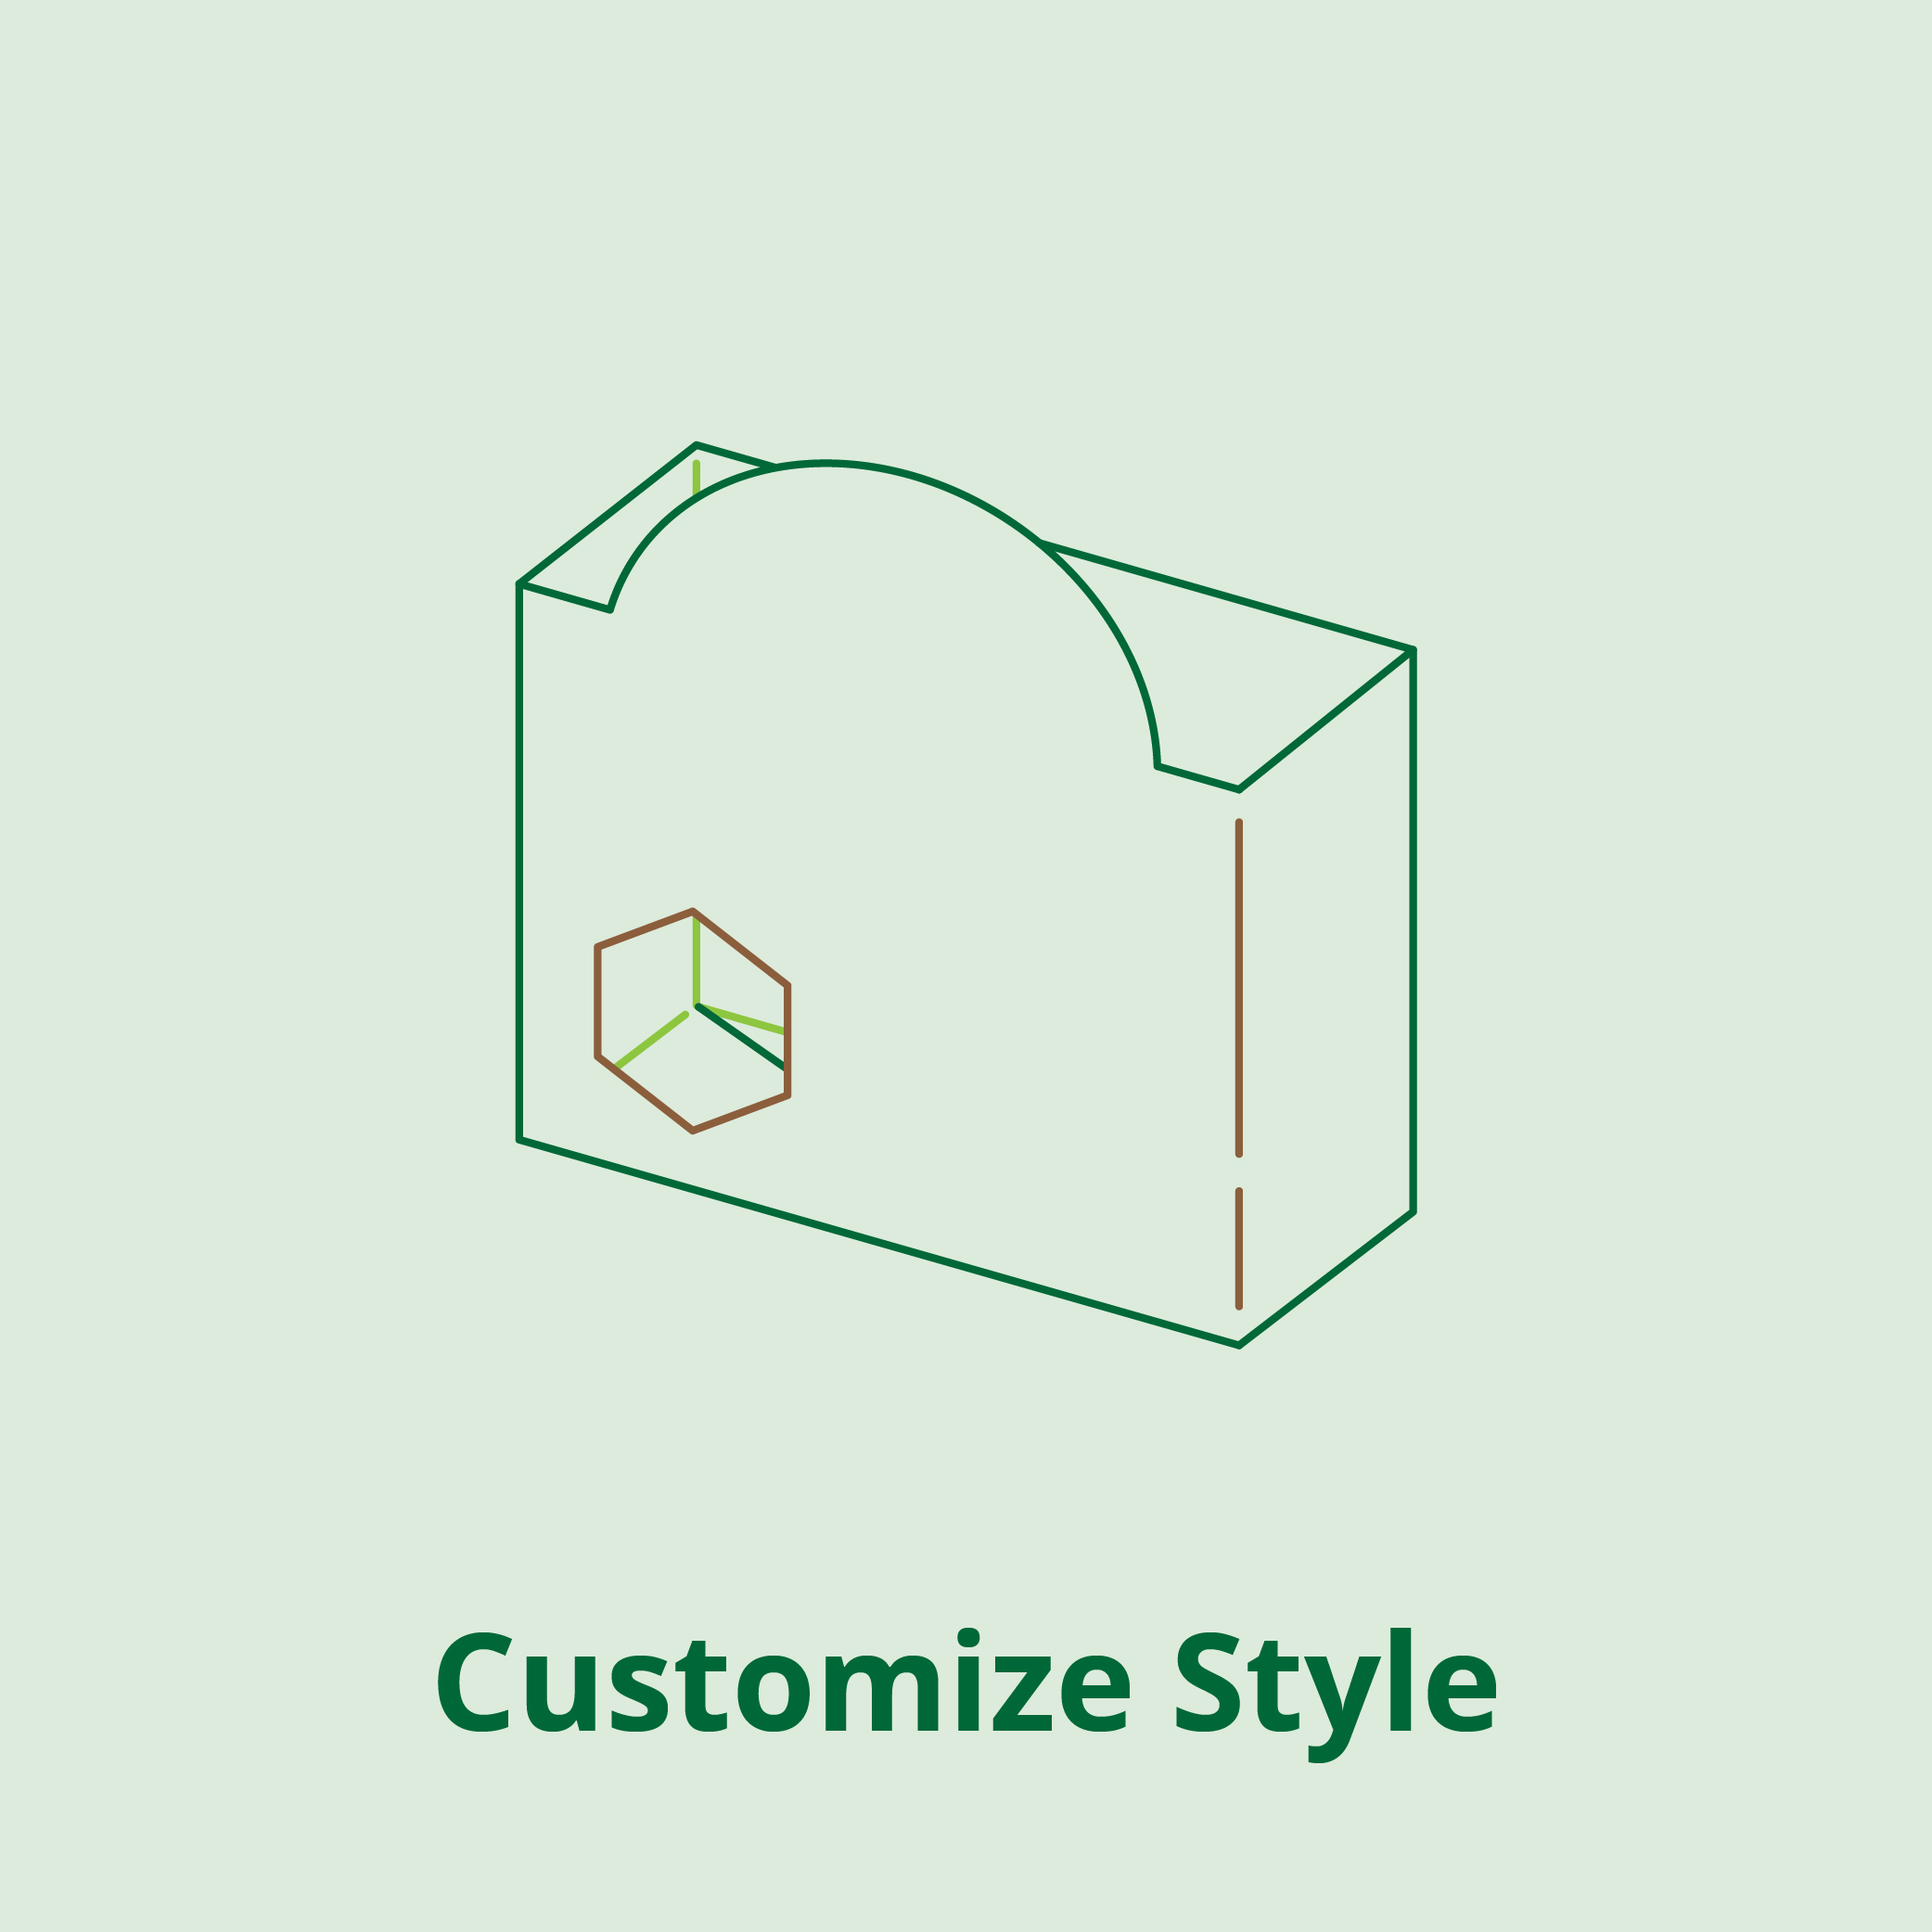 Eco-Customize Style